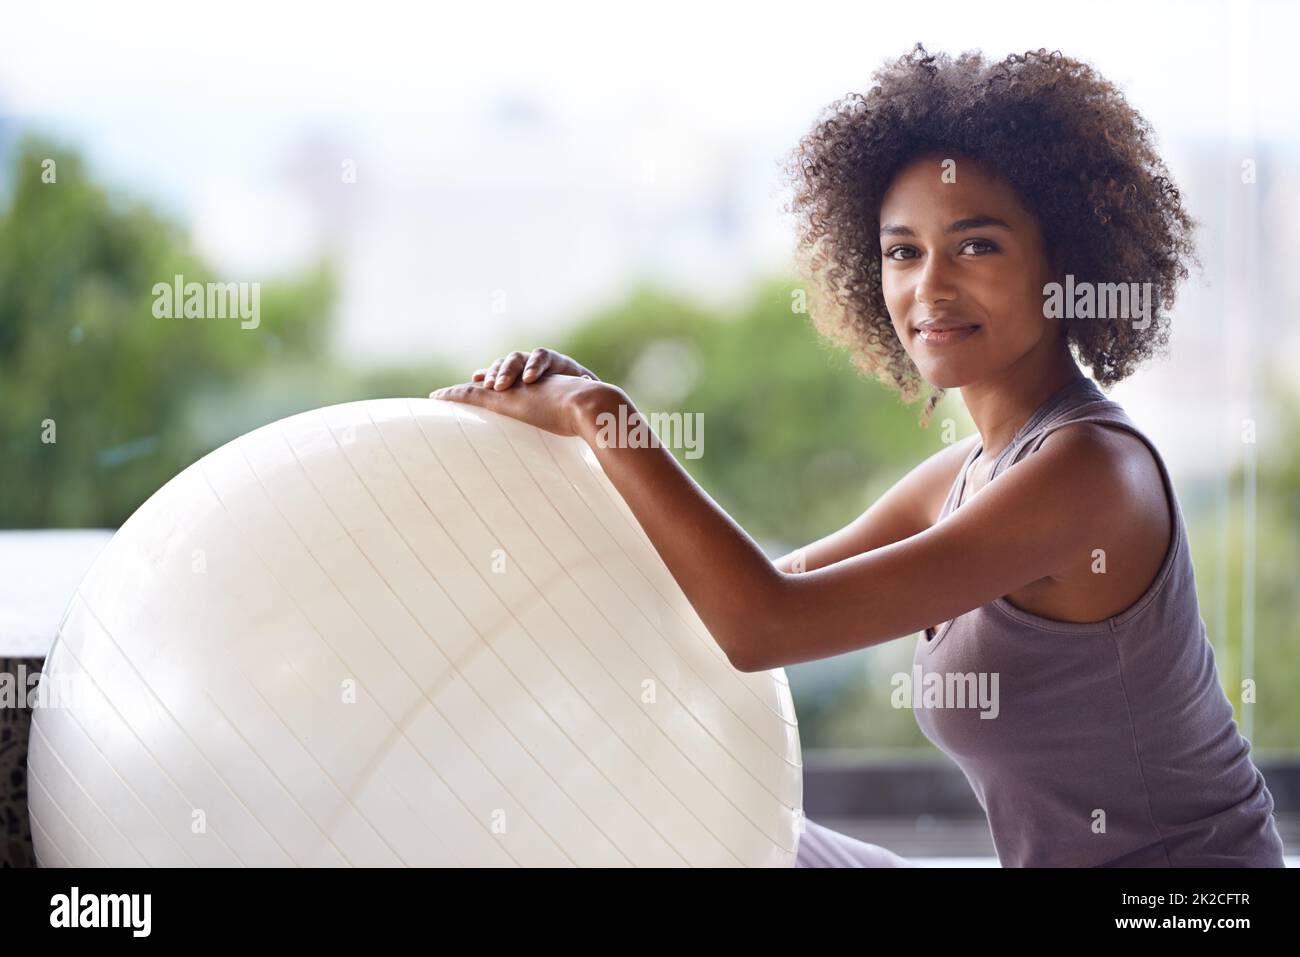 Nur ich und mein Gymnastikball. Ein Porträt einer attraktiven jungen Frau, die mit einem Gymnastikball sitzt. Stockfoto